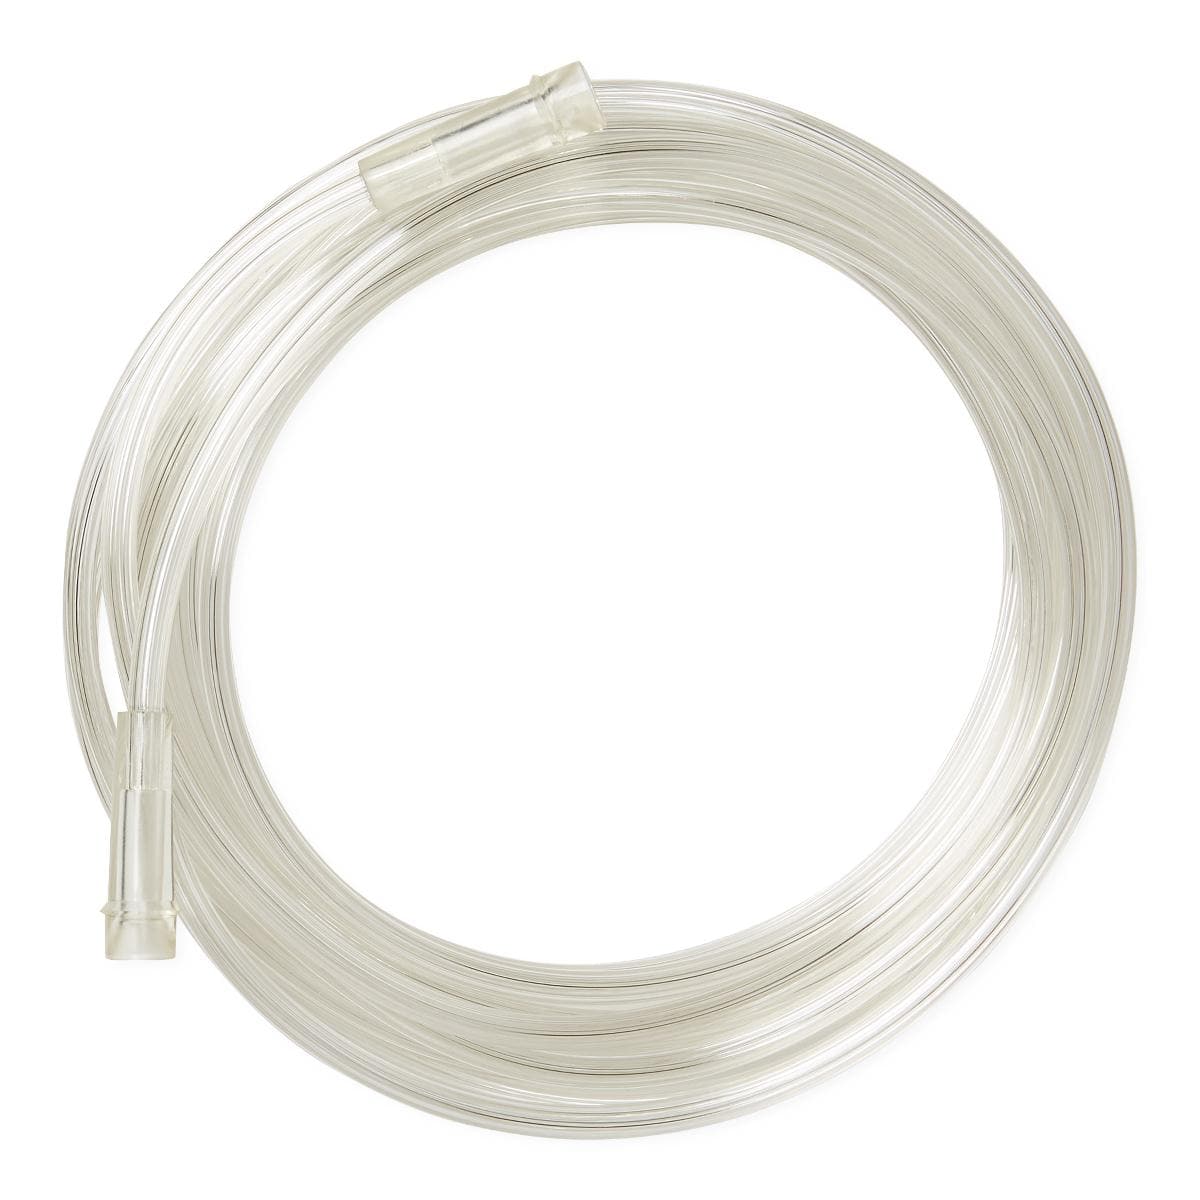 Medline Medline Clear Oxygen Tubing with Standard Connector HCS455010H